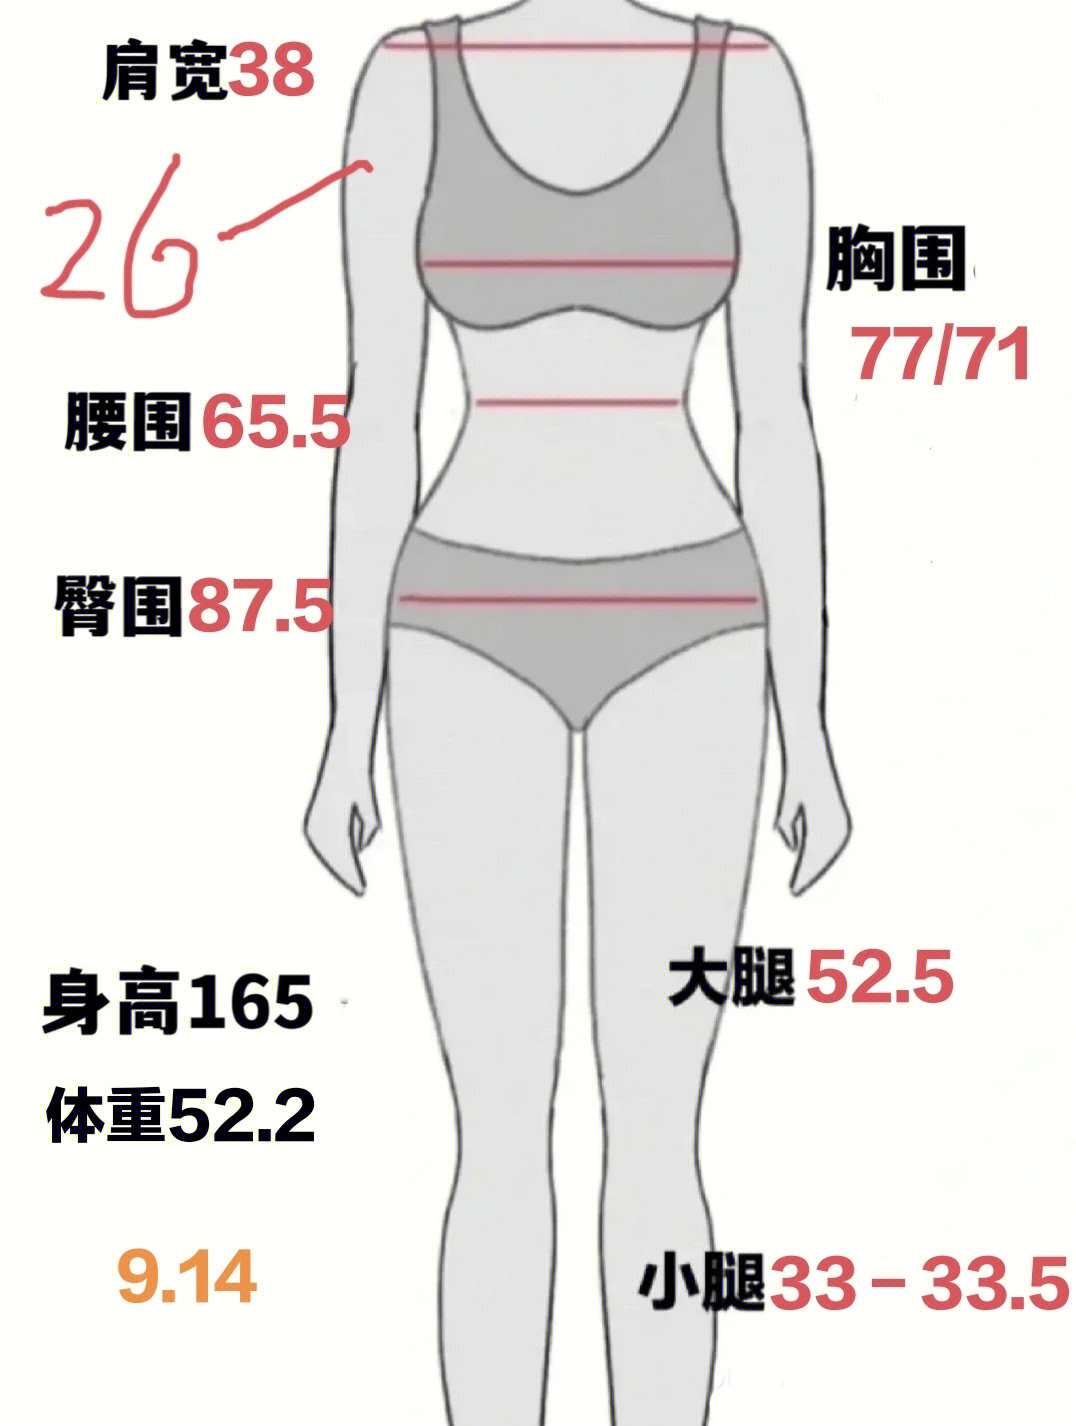 身体围度测量标准图解图片